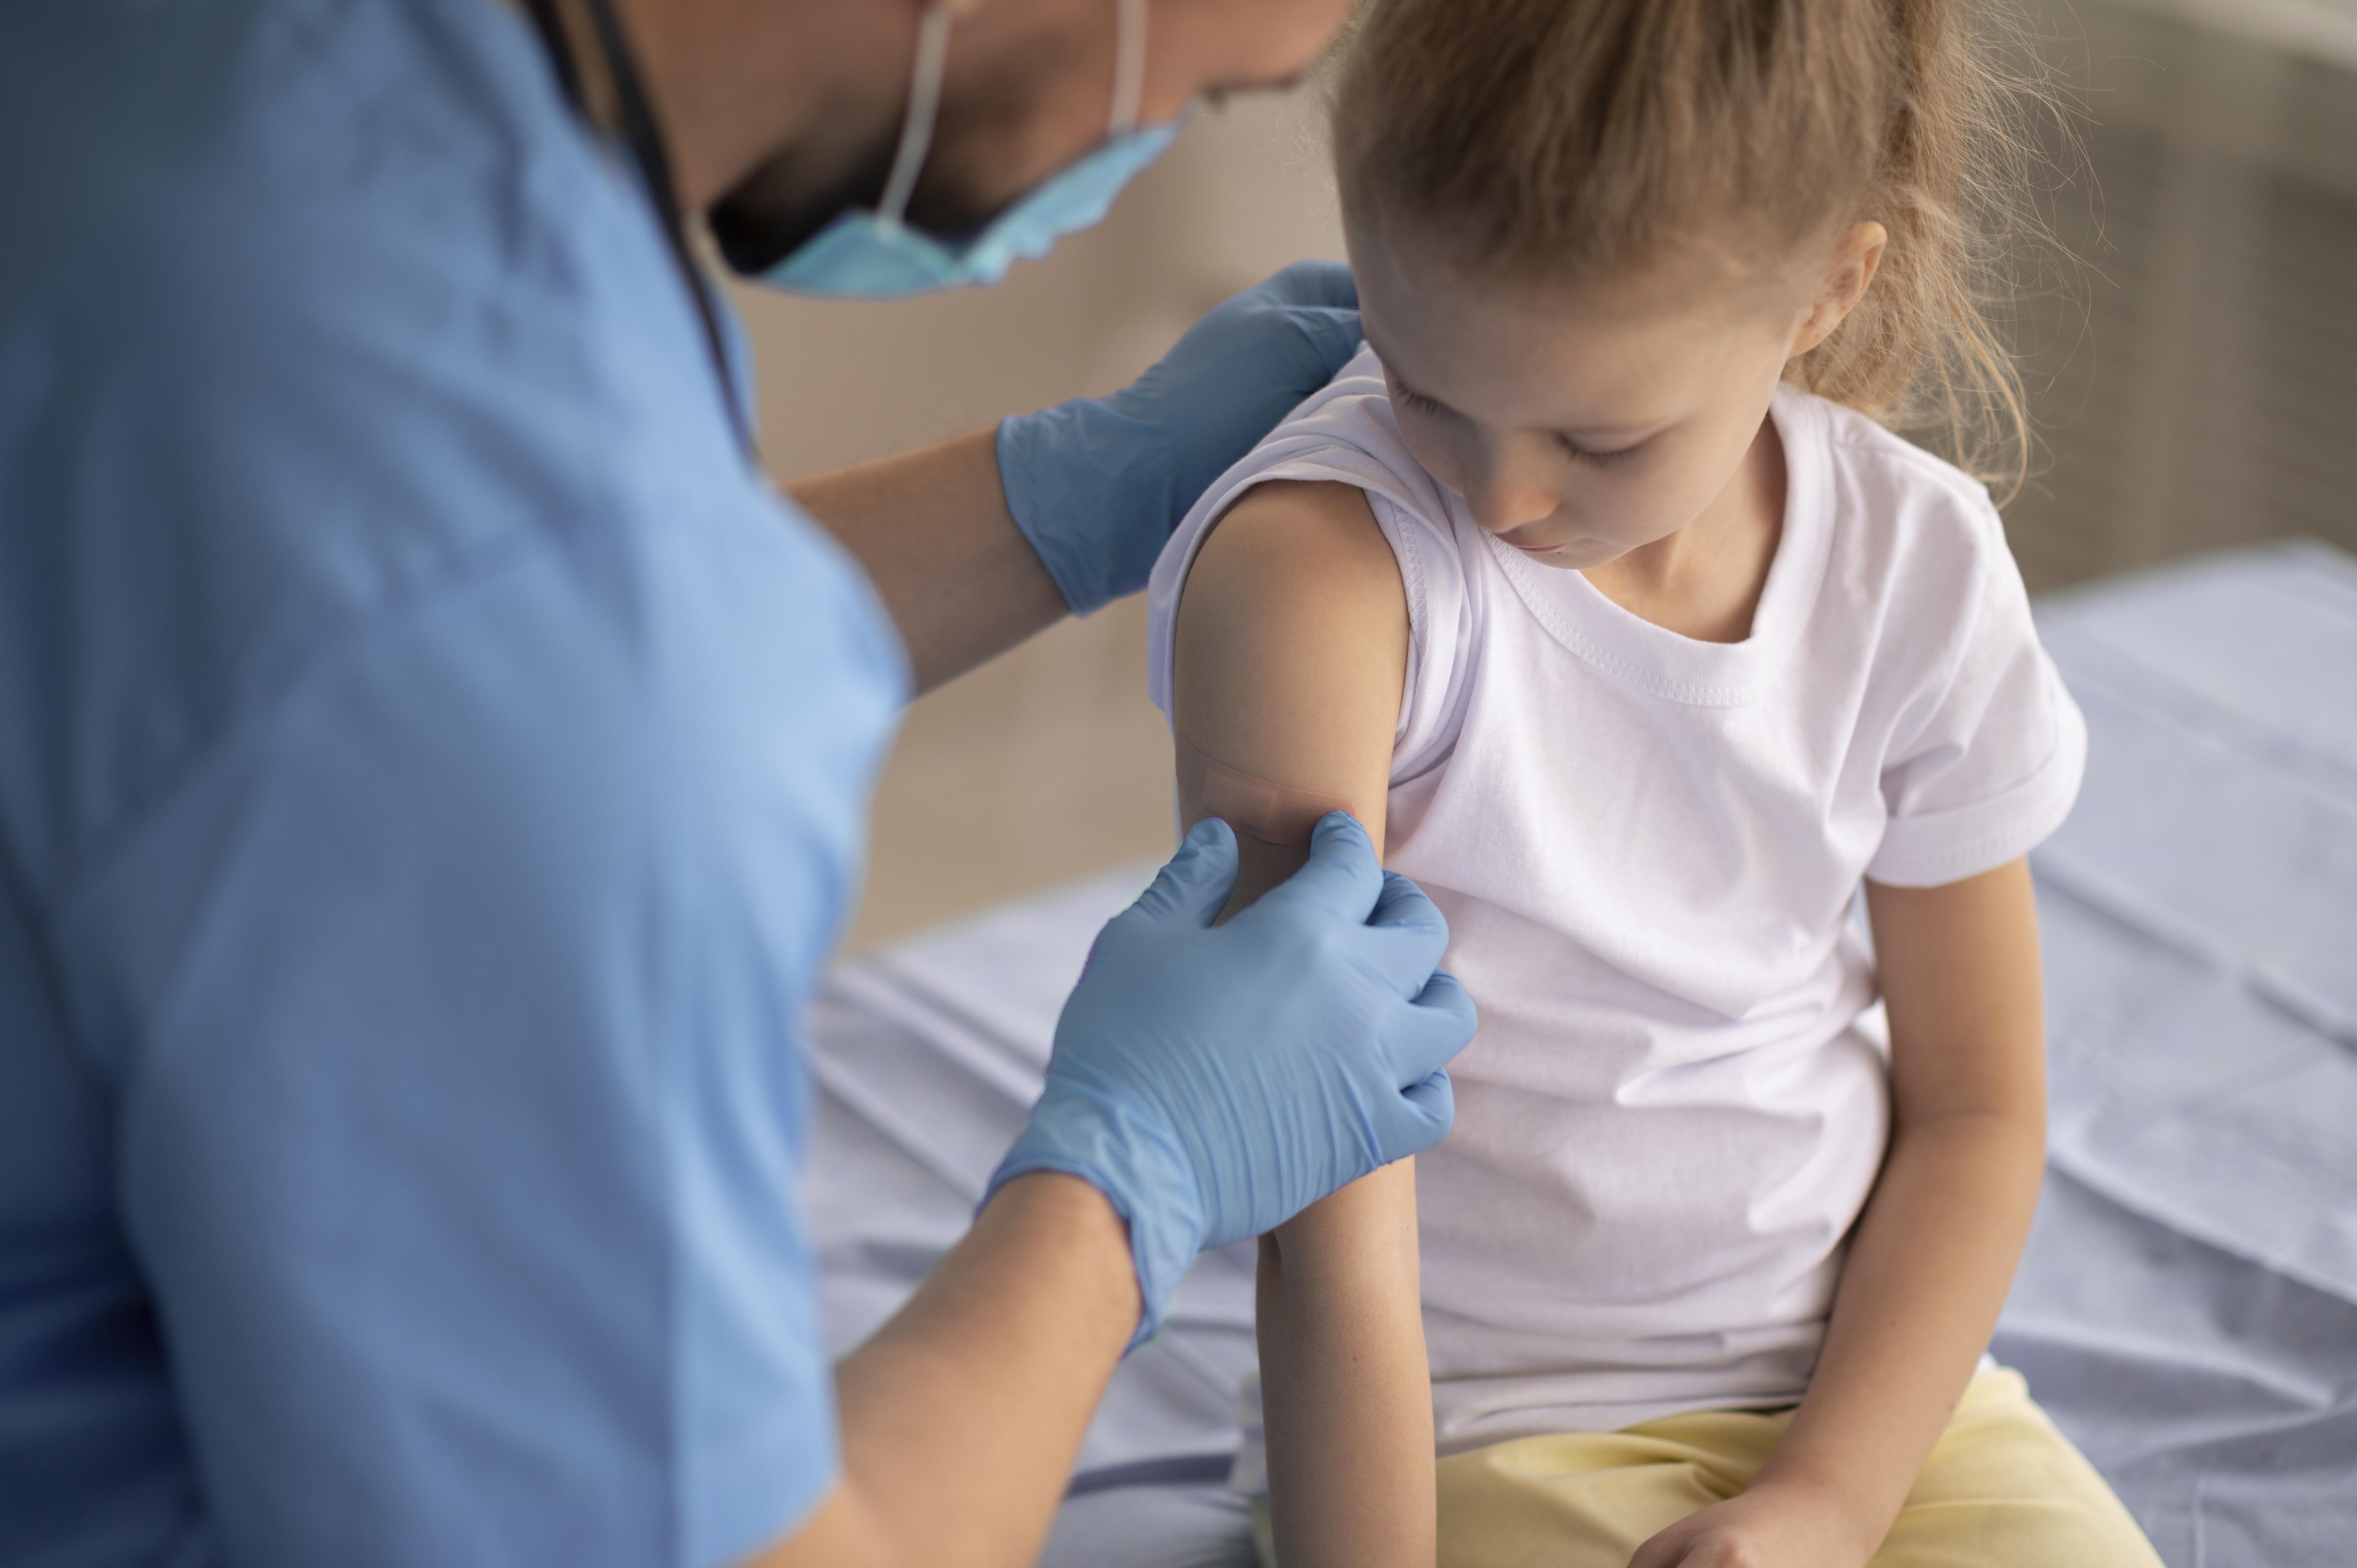 La vacuna contra el rotavirus, que se ha demostrado efectiva contra la celiaquía, será gratuita